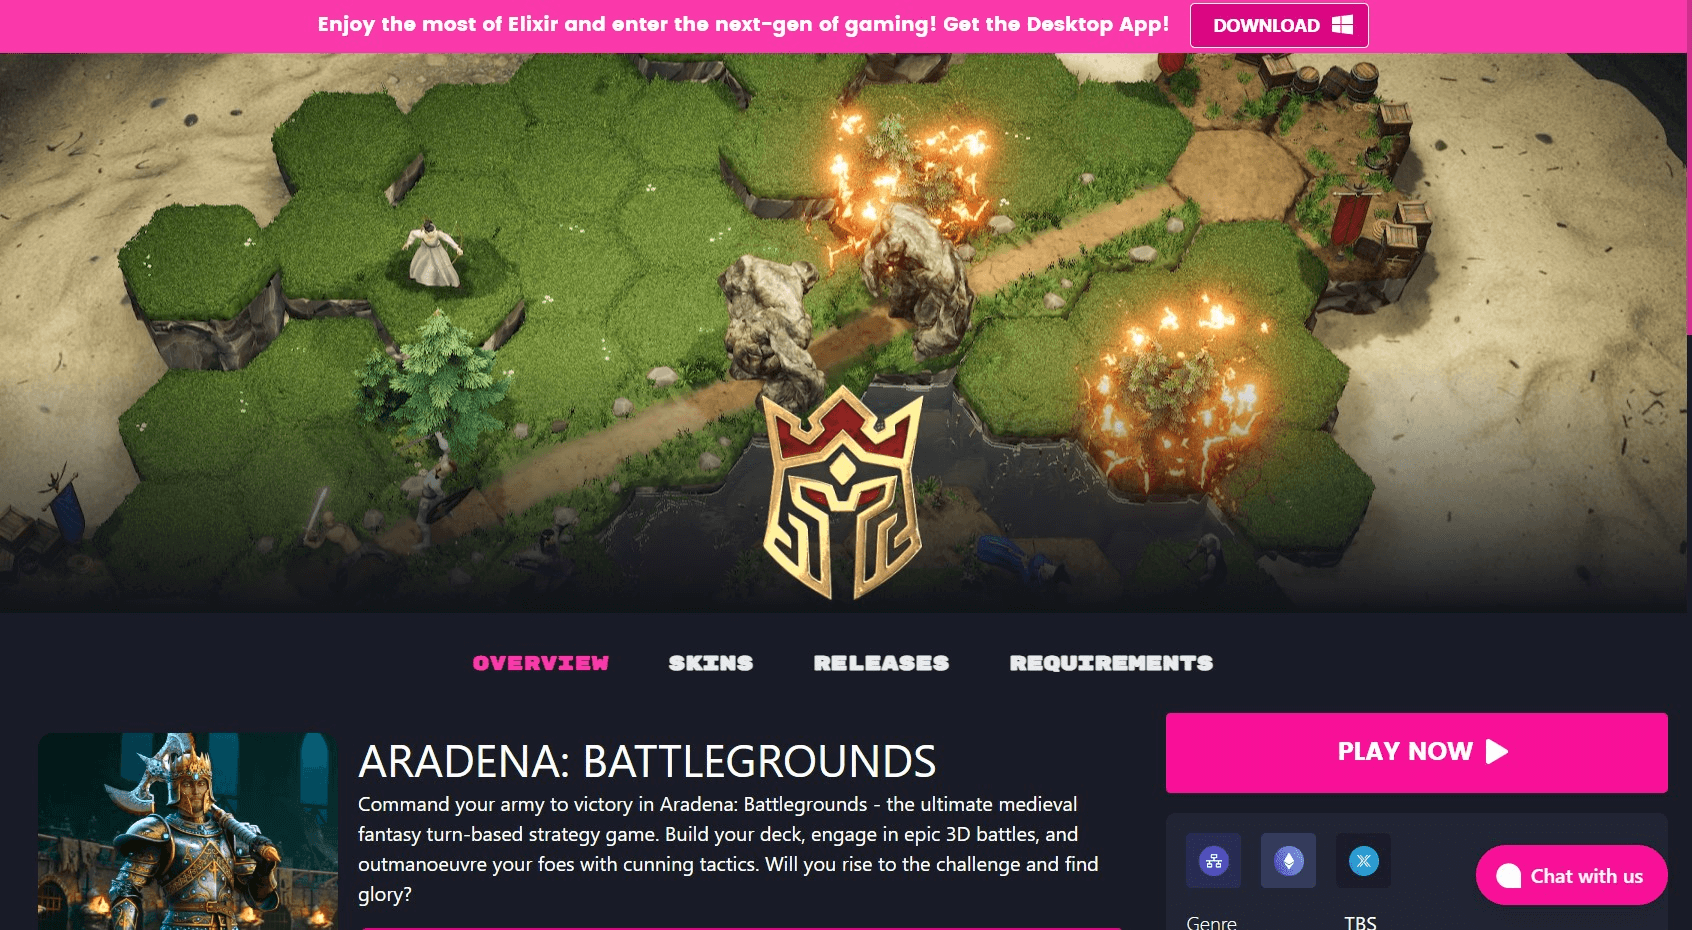 Aradena Battlegrounds' Elixir Download Page (1).png